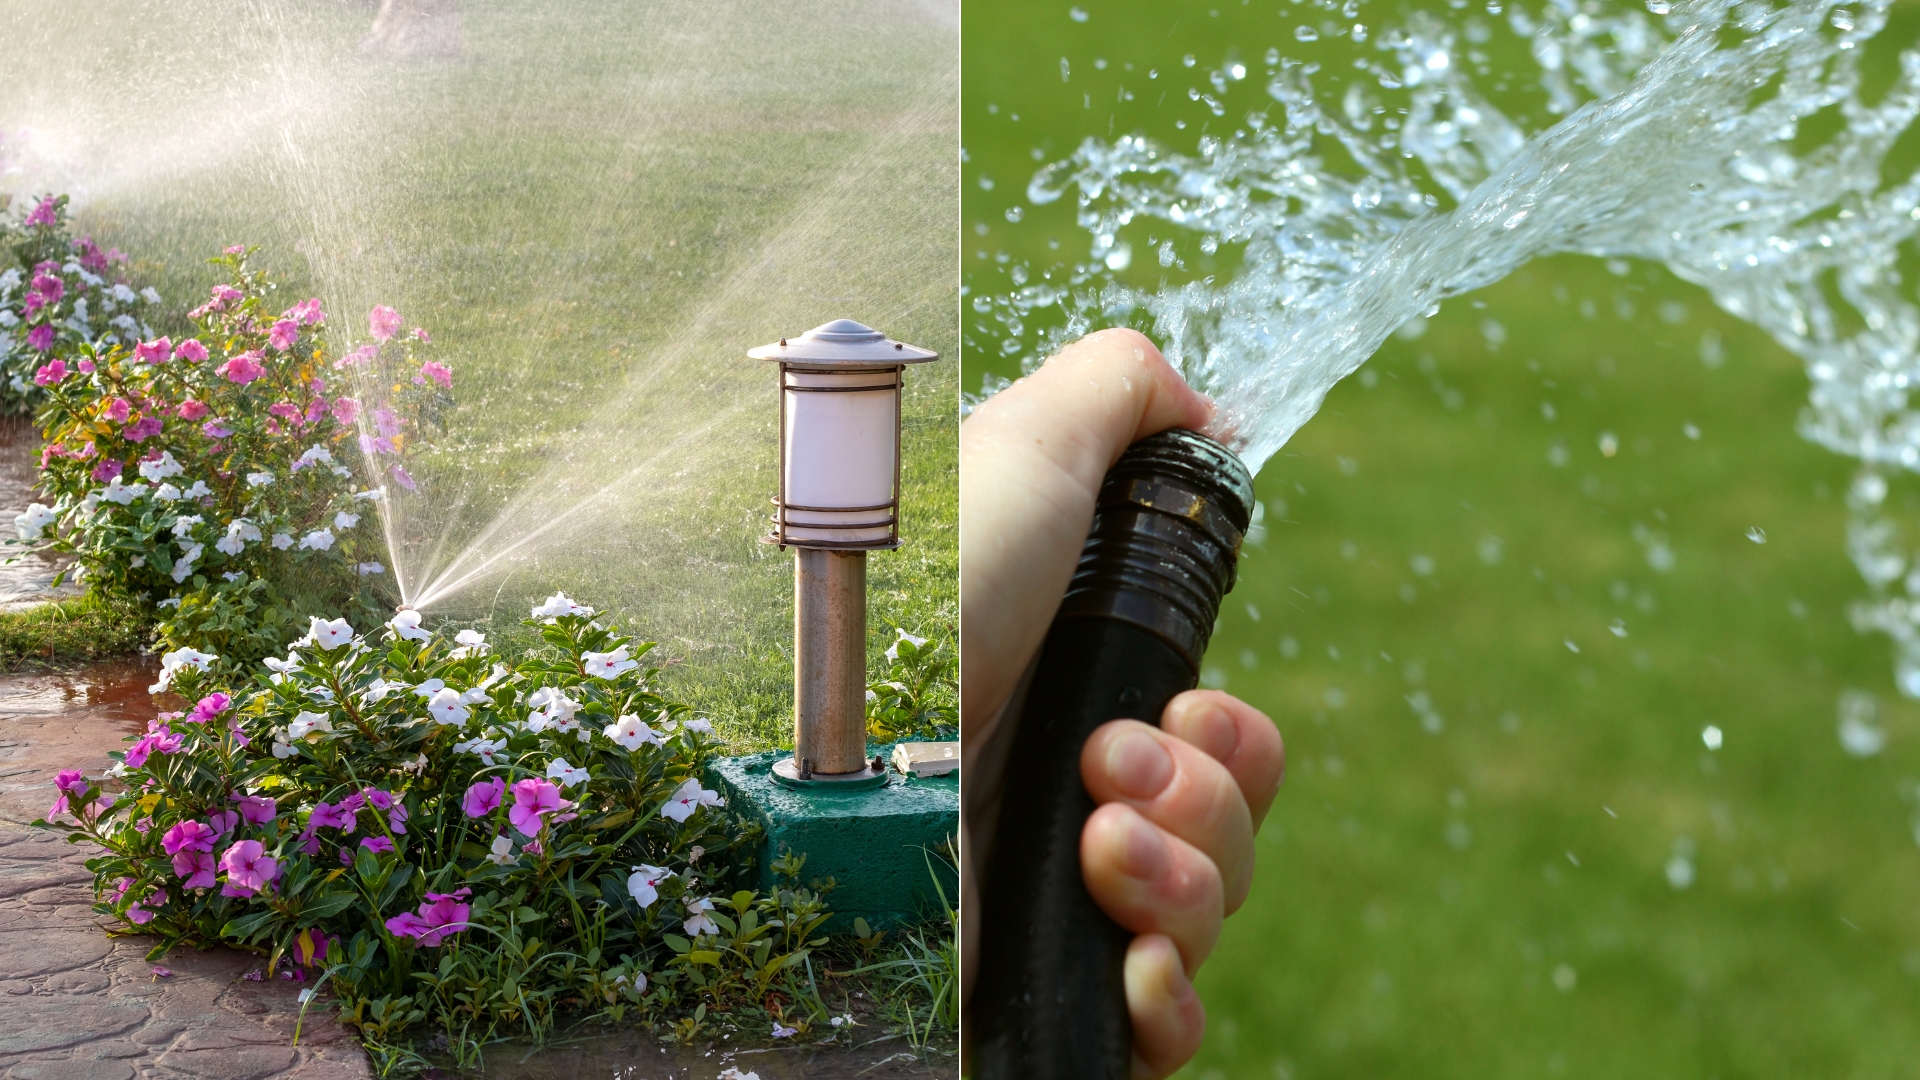 Sprinkler vs. Hose: What Is The Better Option?